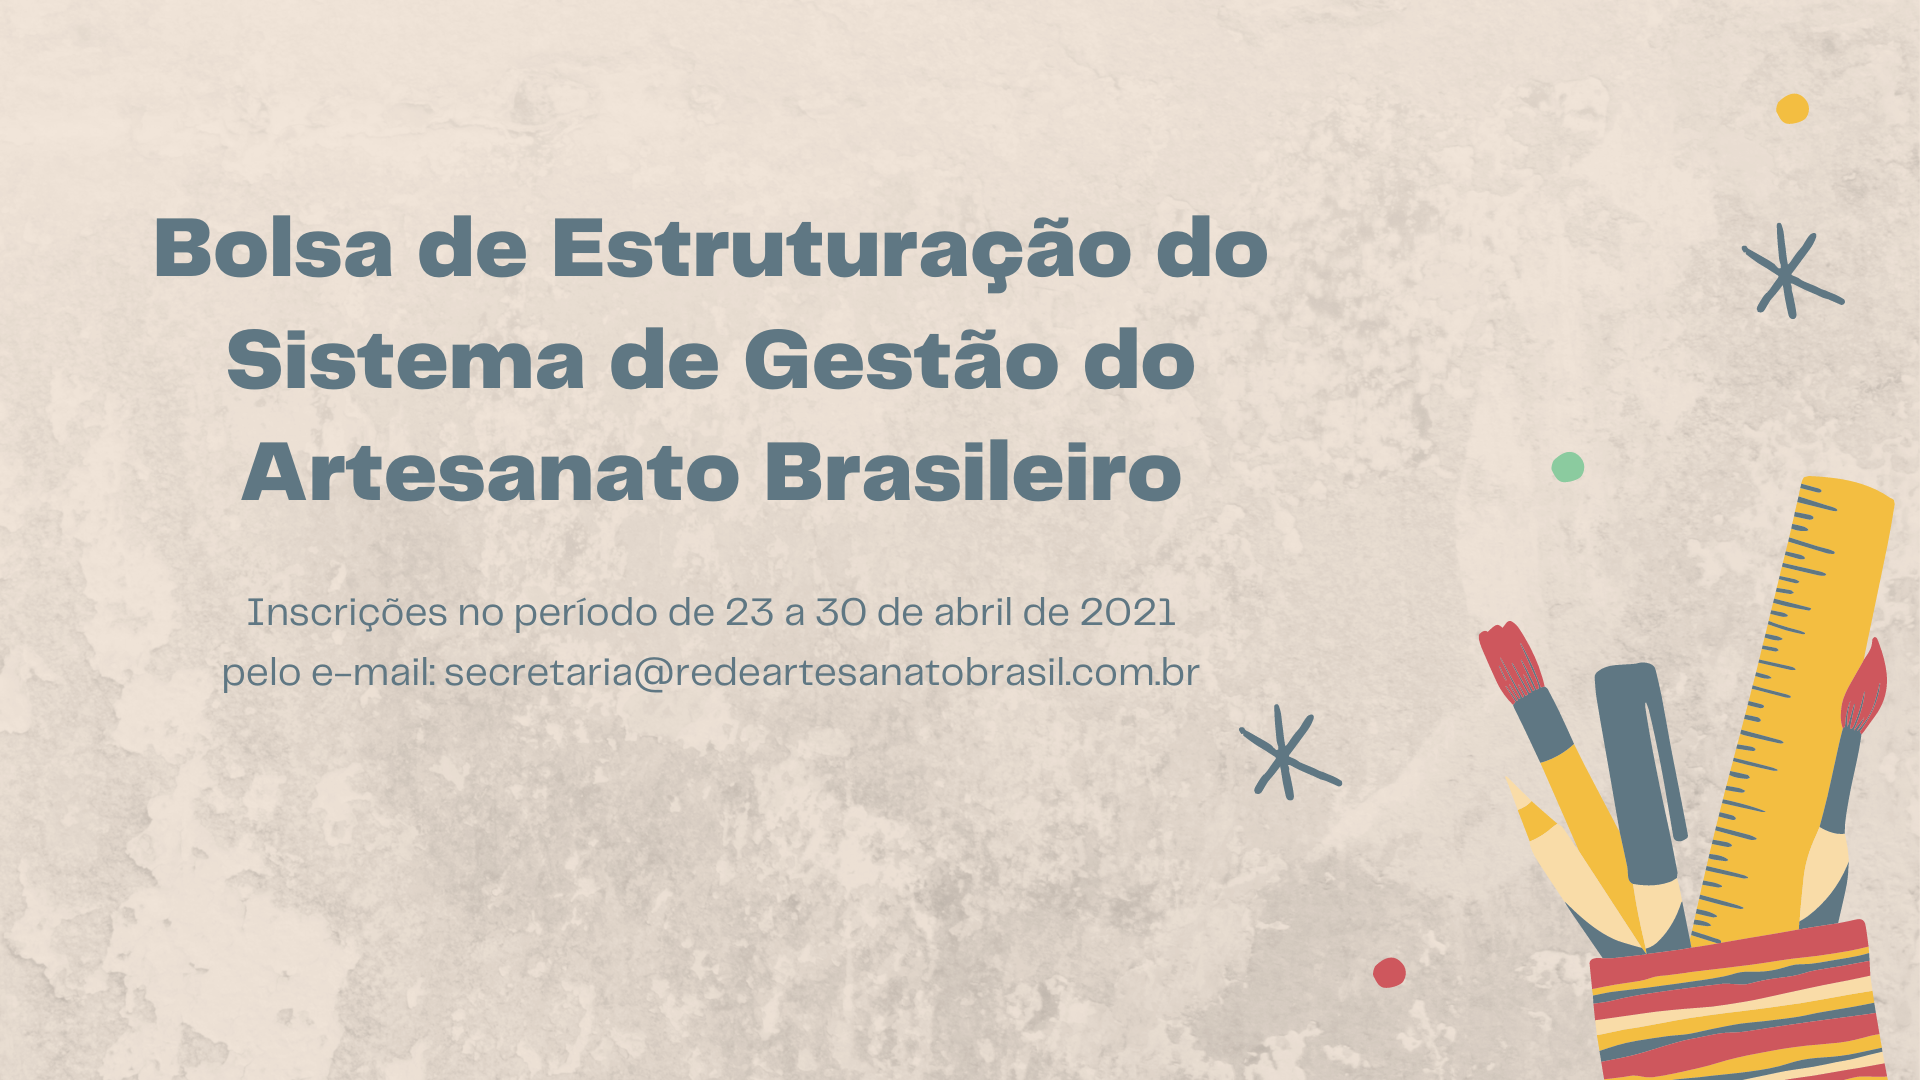 Bolsa de Estruturação do Sistema de Gestão do Artesanato Brasileiro